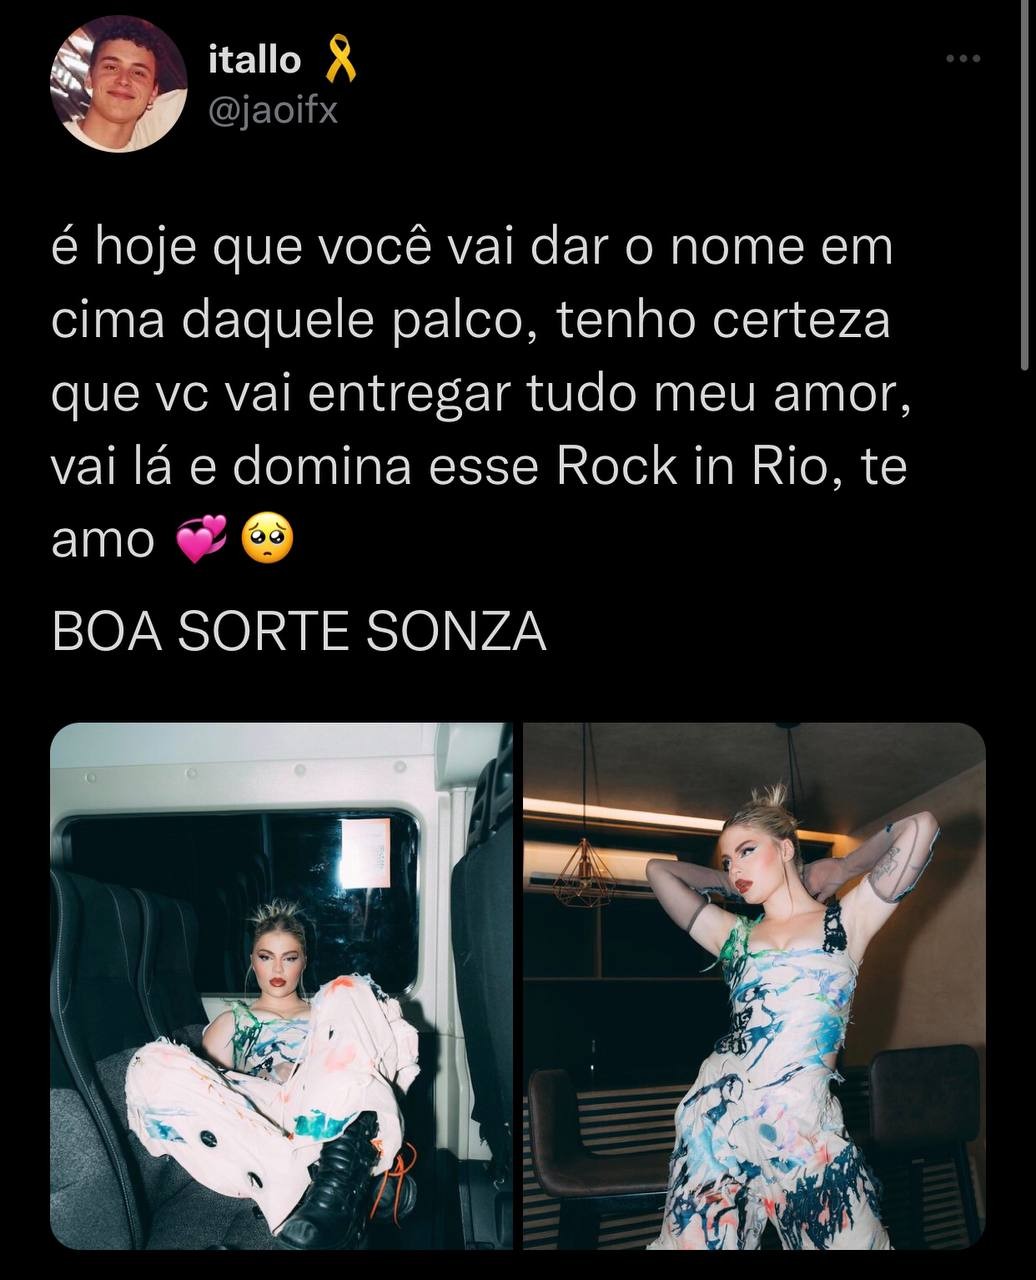 Fãs apoiam estreia de Luísa Sonza no Rock in Rio com hashtag 'Boa Sorte Sonza' (Foto: Reprodução /Twitter)